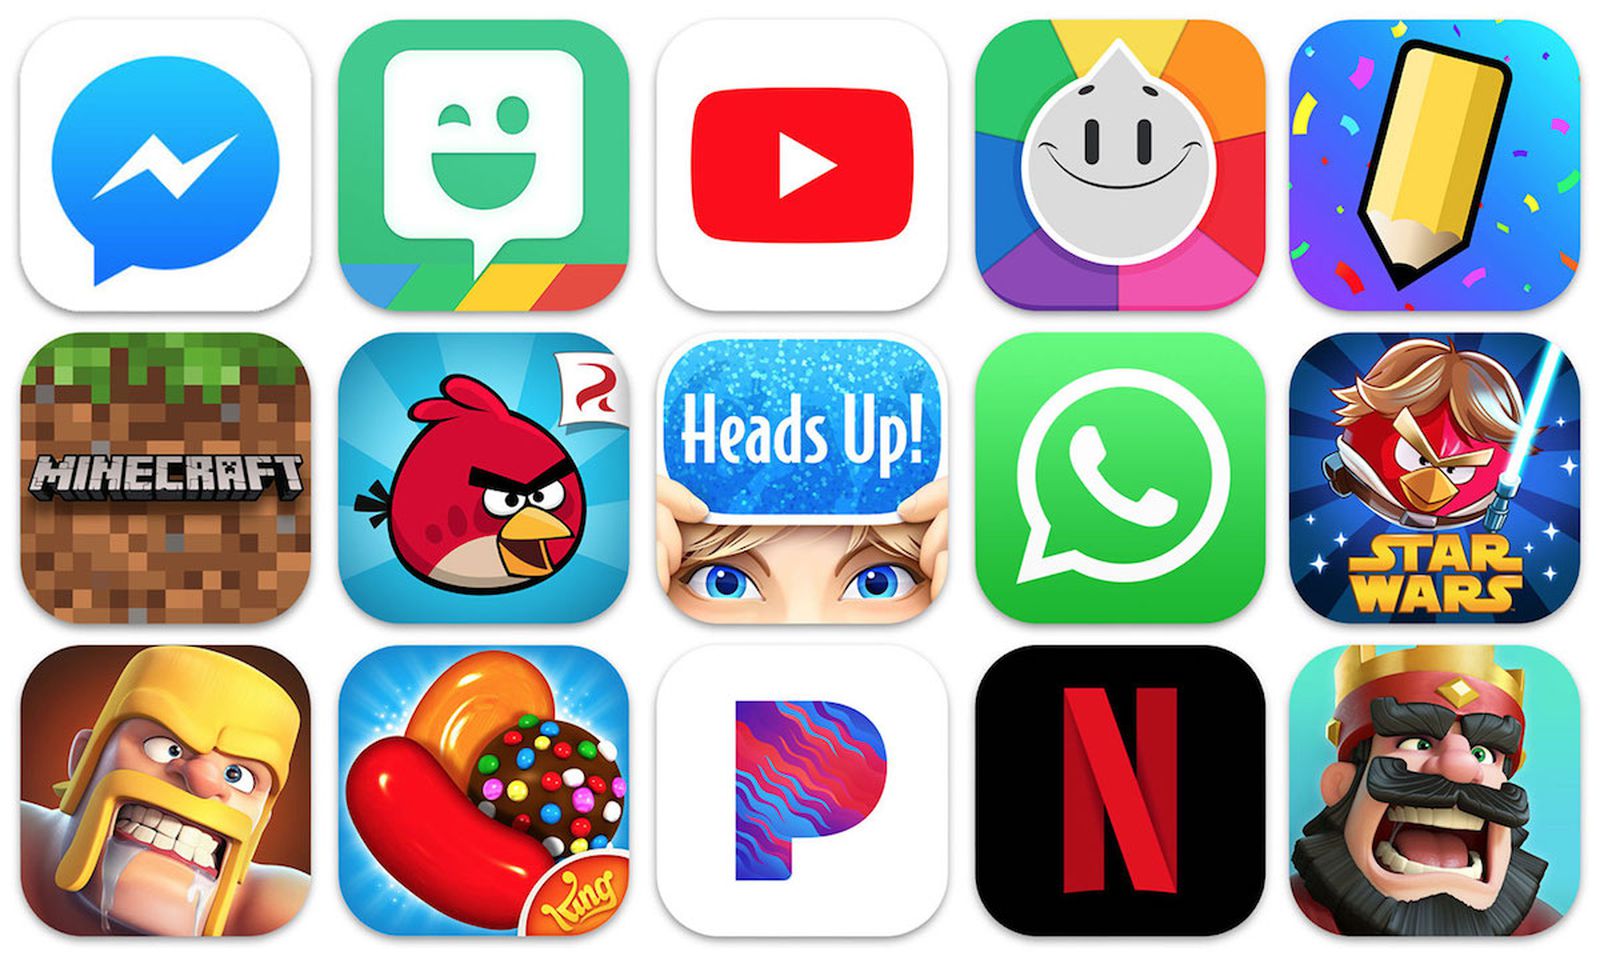 App game apk. Логотипы приложений. Иконки популярных приложений и игр. Значки популярных приложений. Приложение игры.